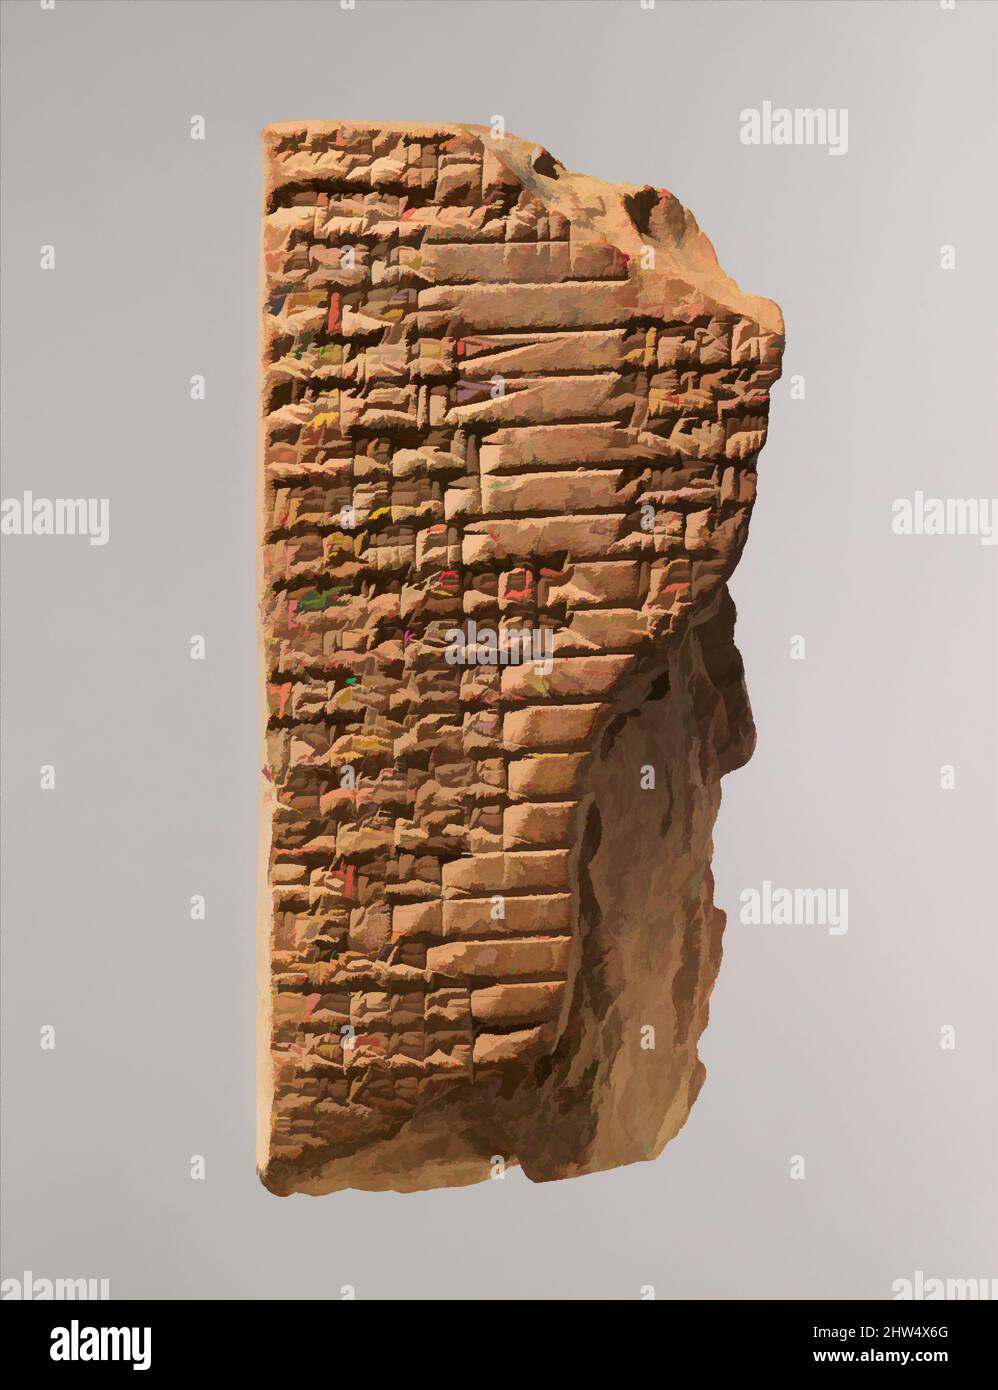 Kunst inspiriert von Cuneiform Tablette: Alte babylonische Balag an die Muttergöttin Aruru, Old Babylonian, ca. 19..–16.. Jahrhundert v. Chr., Mesopotamien, Babylonisch, Ton, 3 7/8 x 1 7/8 x 1 1/8 Zoll (10 x 4,9 x 2,7 cm), Tontafeln-Inschrift, liturgische Kompositionen wurden in Mesopotamien verwendet, um klassische Werke, die von Artotop mit einem Schuss Moderne modernisiert wurden. Formen, Farbe und Wert, auffällige visuelle Wirkung auf Kunst. Emotionen durch Freiheit von Kunstwerken auf zeitgemäße Weise. Eine zeitlose Botschaft, die eine wild kreative neue Richtung verfolgt. Künstler, die sich dem digitalen Medium zuwenden und die Artotop NFT erschaffen Stockfoto